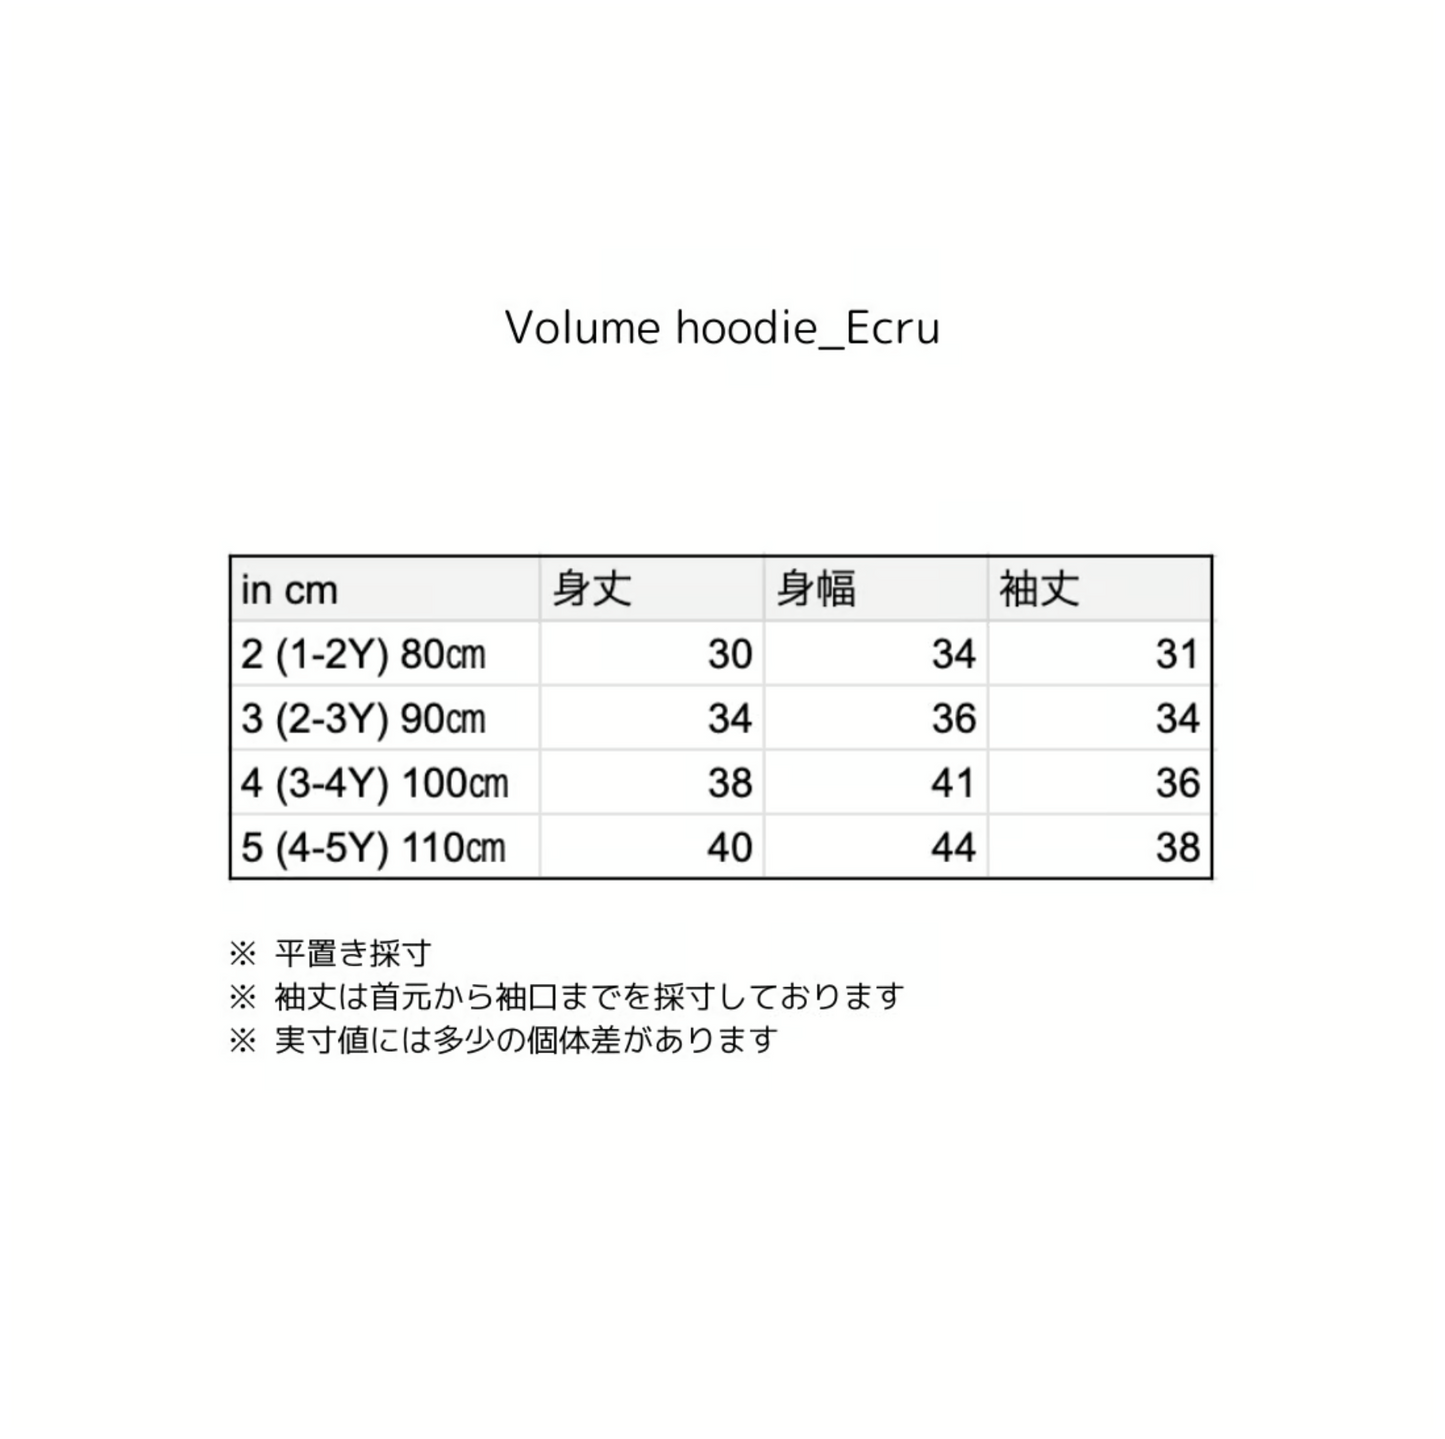 Volume hoodie_Ecru cream